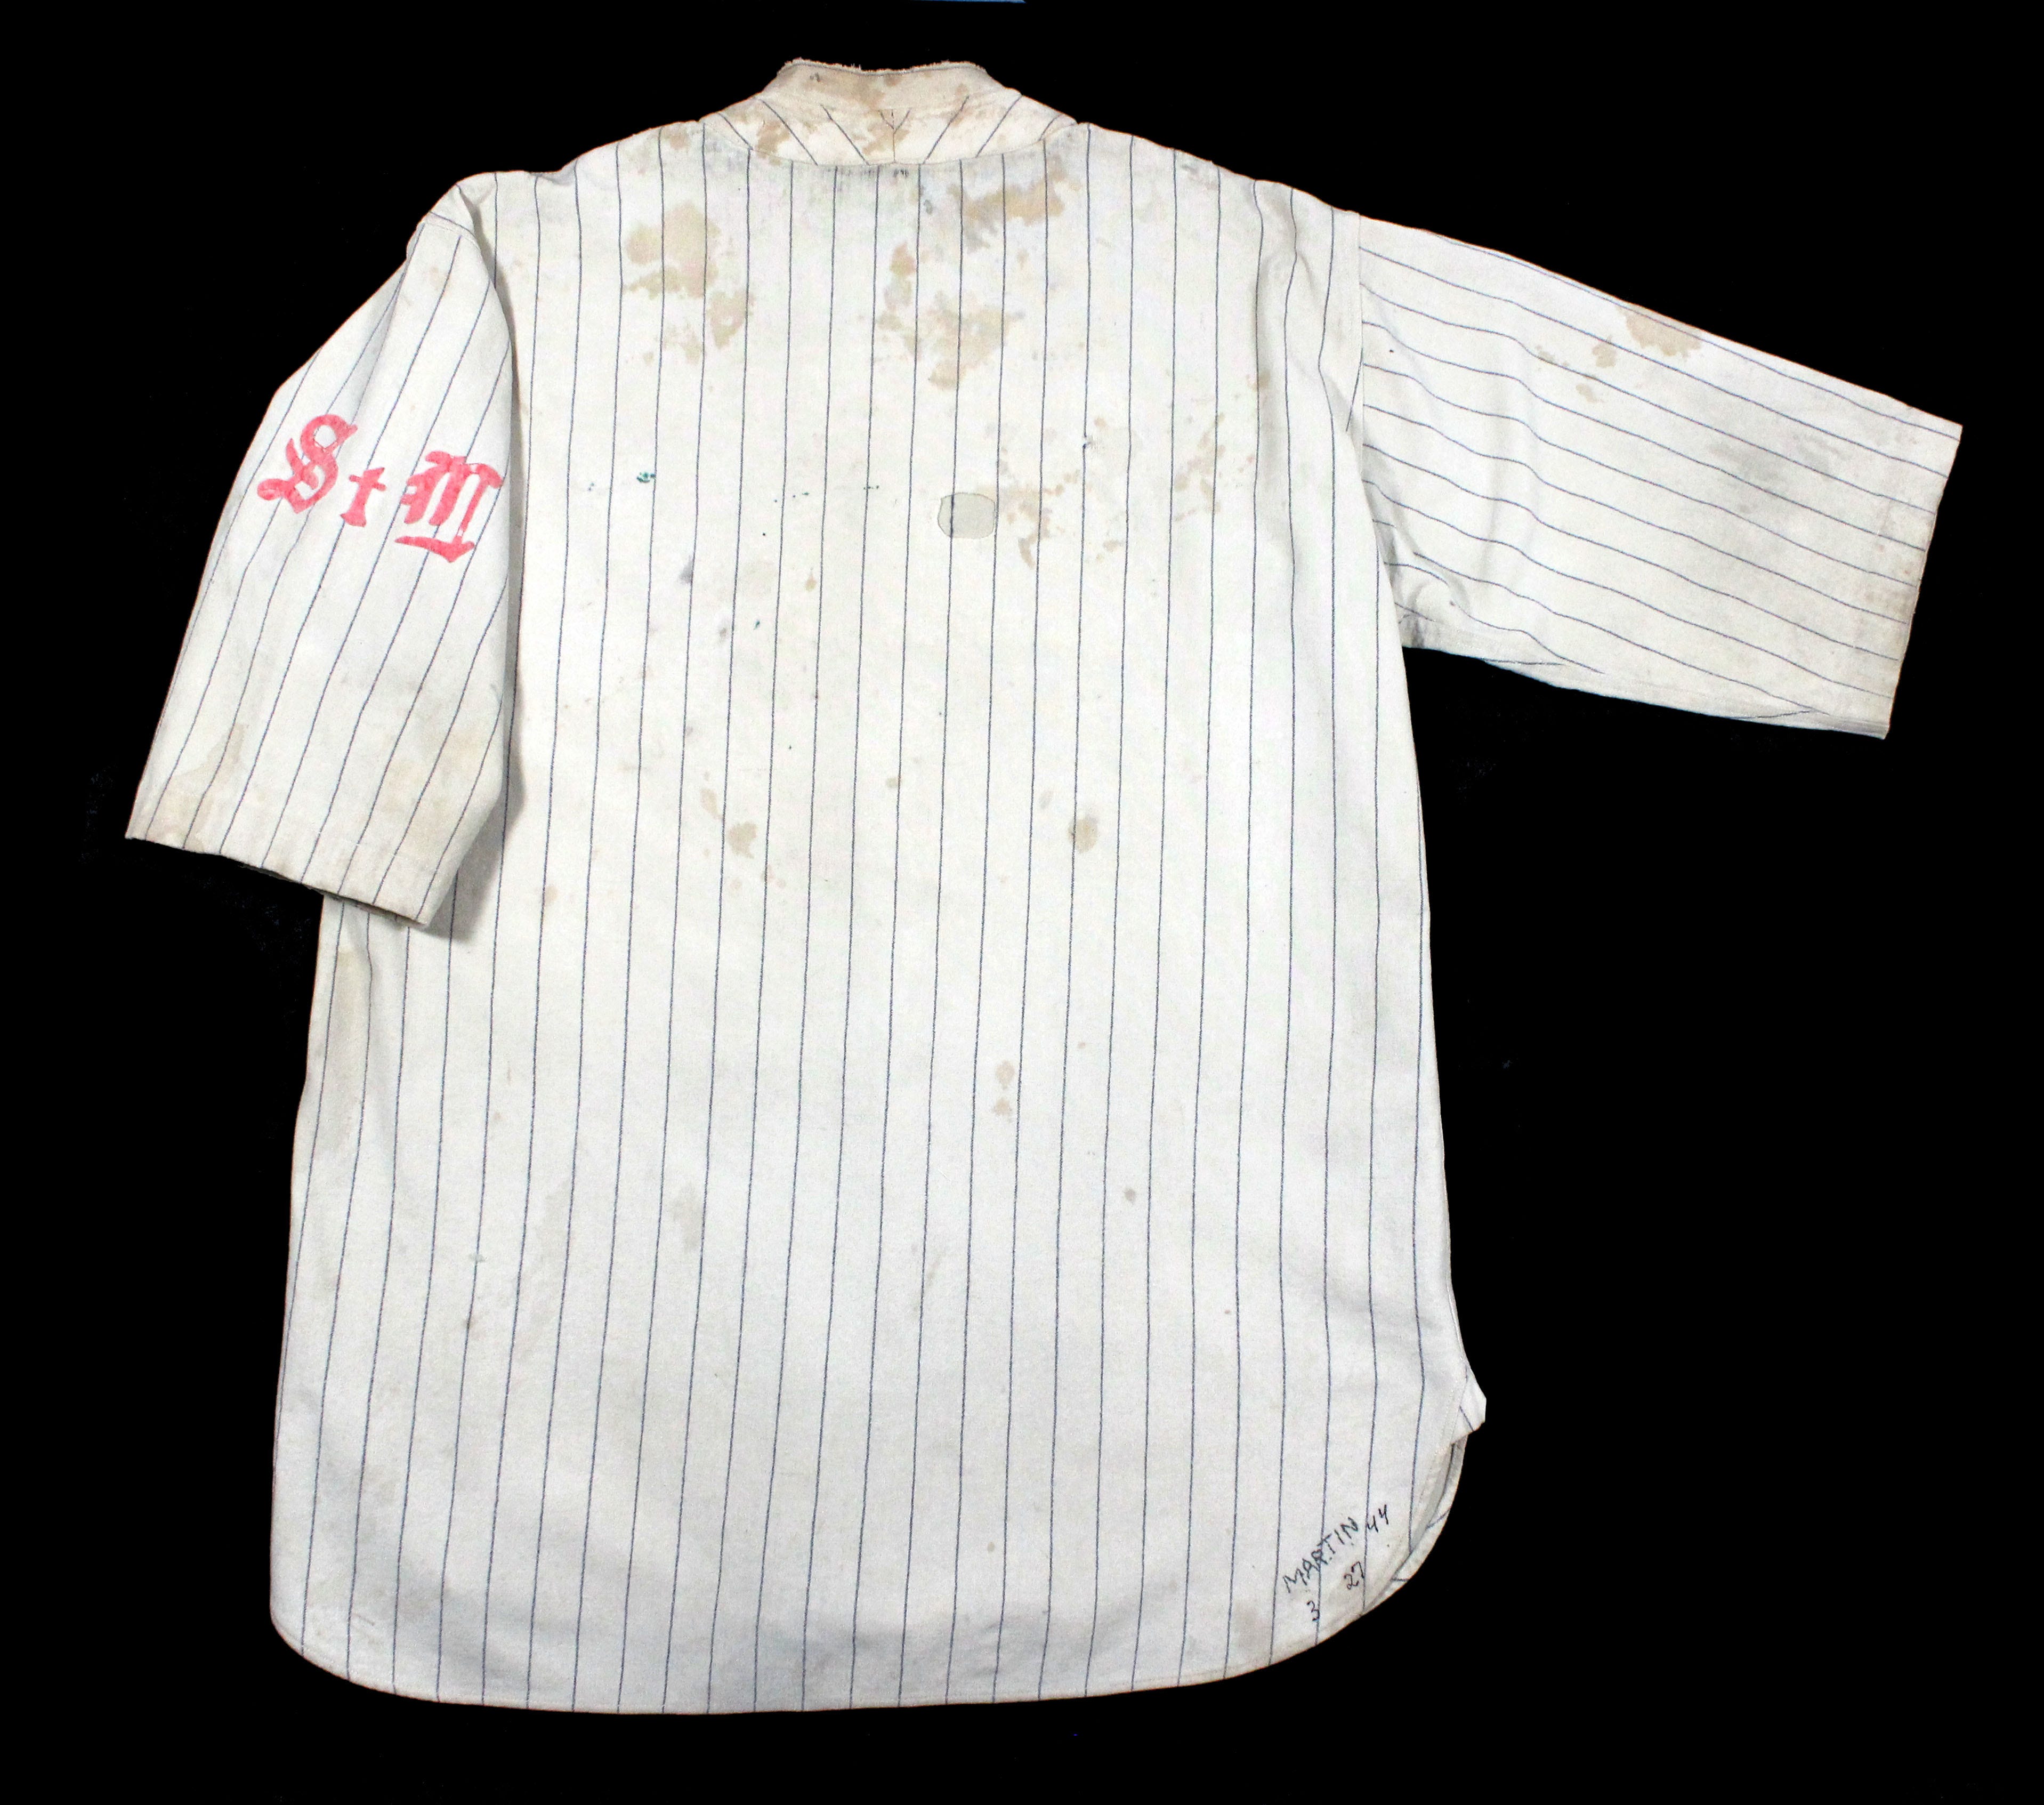 1927 cardinals jersey